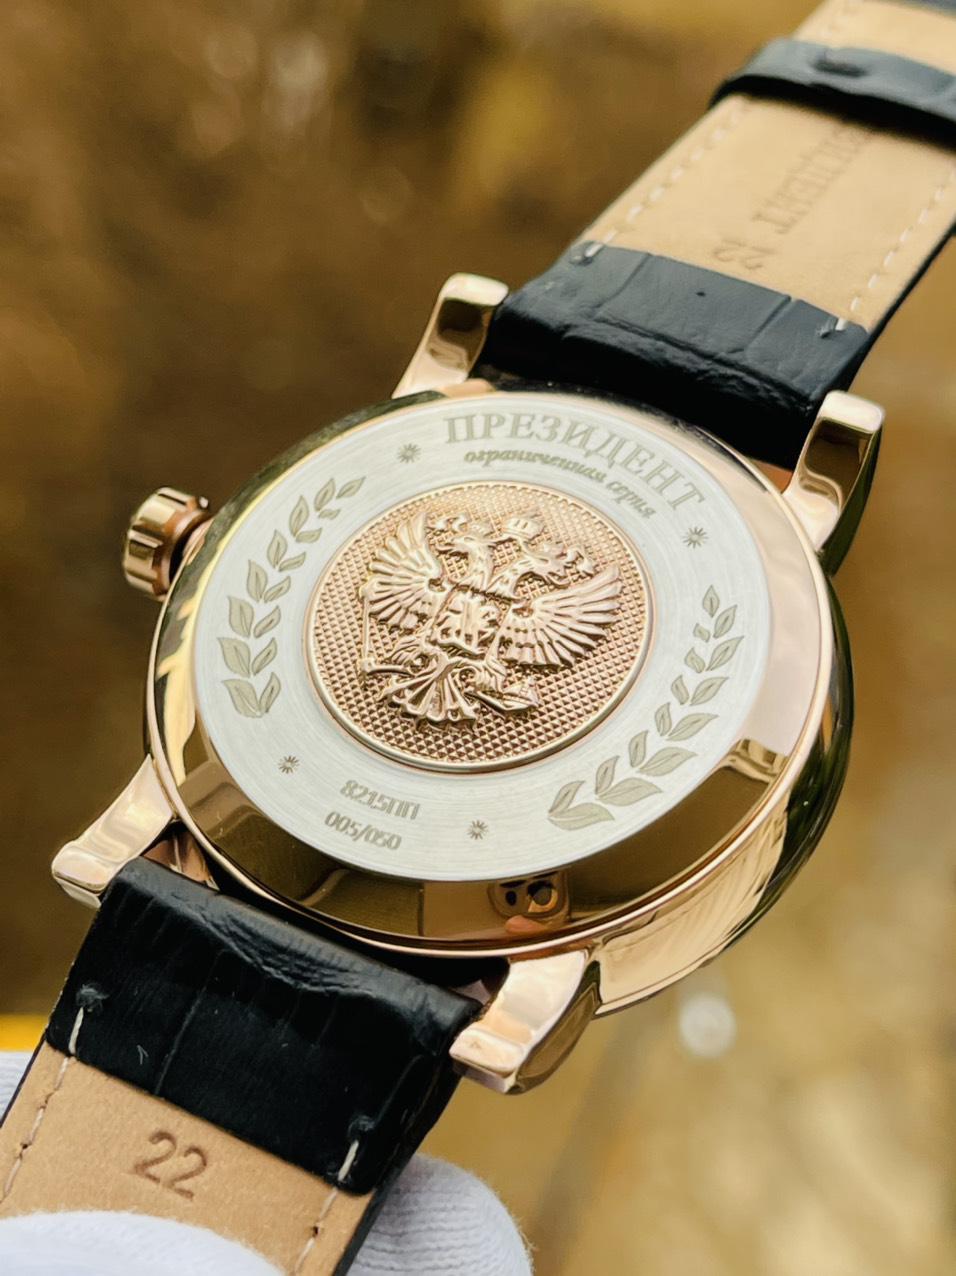 Đồng hồ Nga chữ ký tổng thống Putin 252CK119